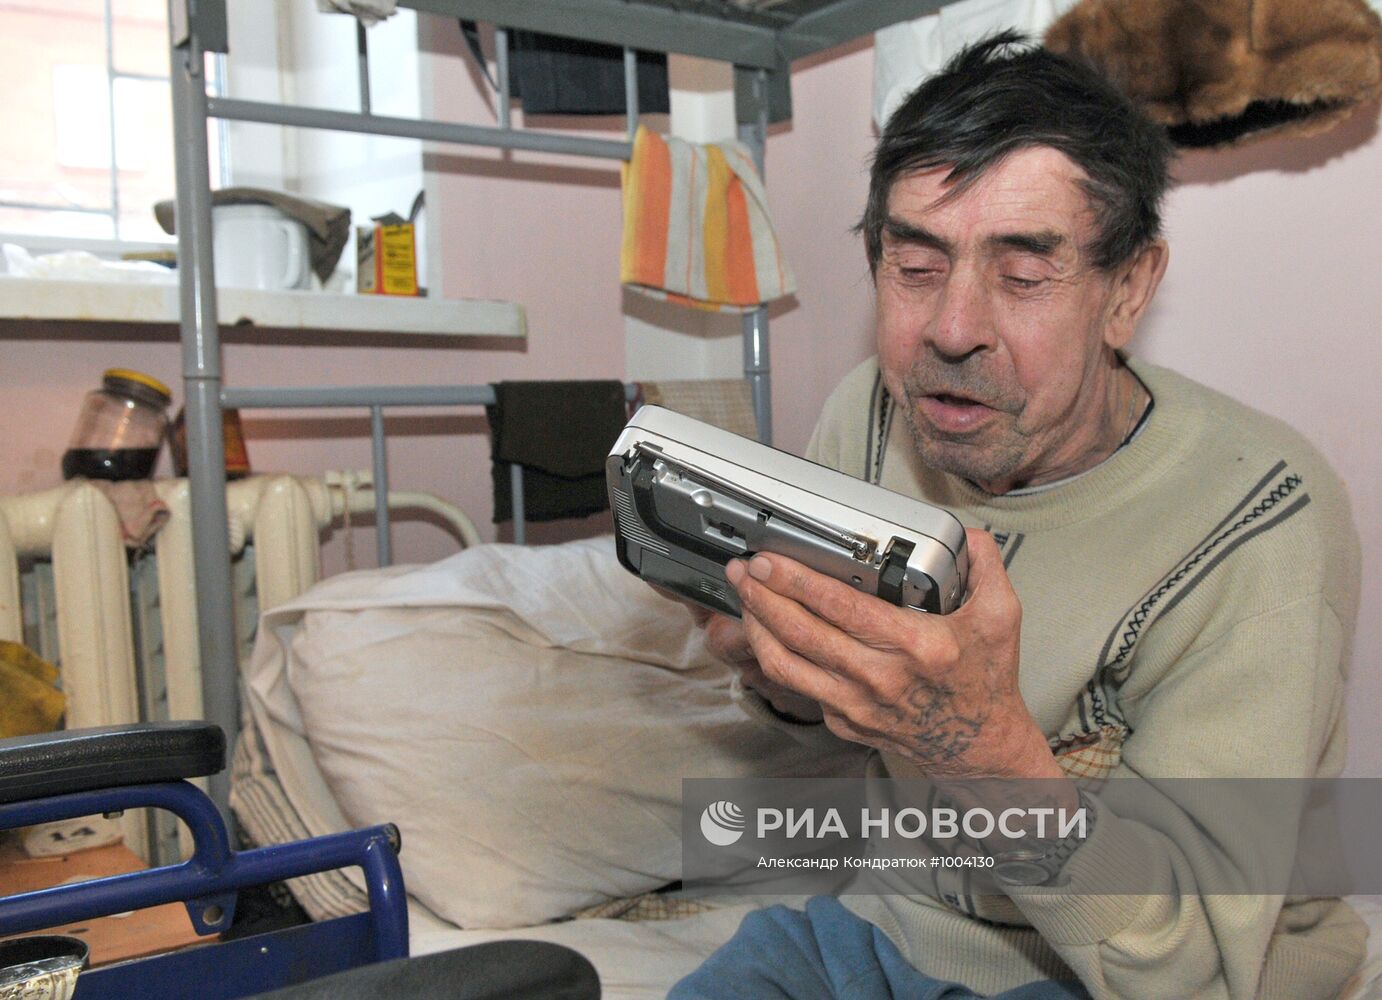 Работа социального центра помощи бездомным в Челябинске